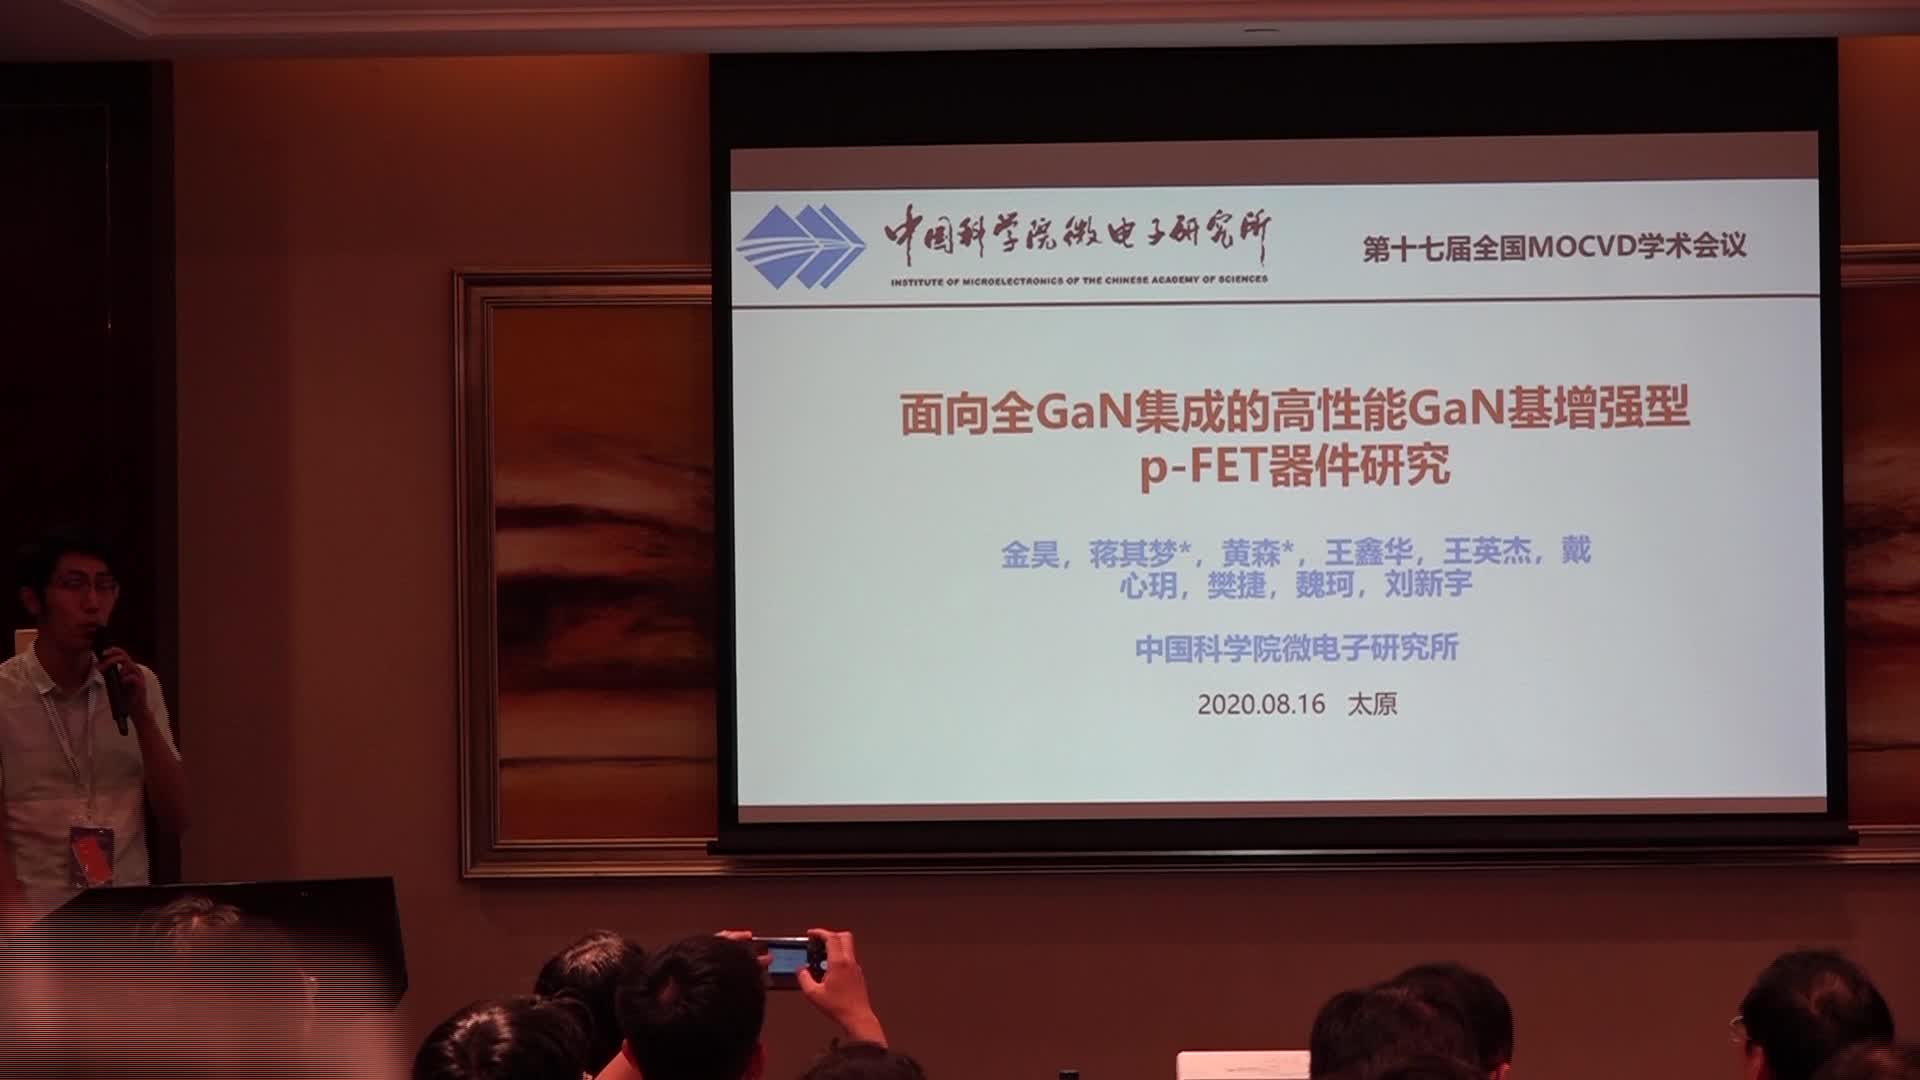 中国科学院微电子所金昊：面向全GaN集成的高性能GaN基增强型p-FET器件研究